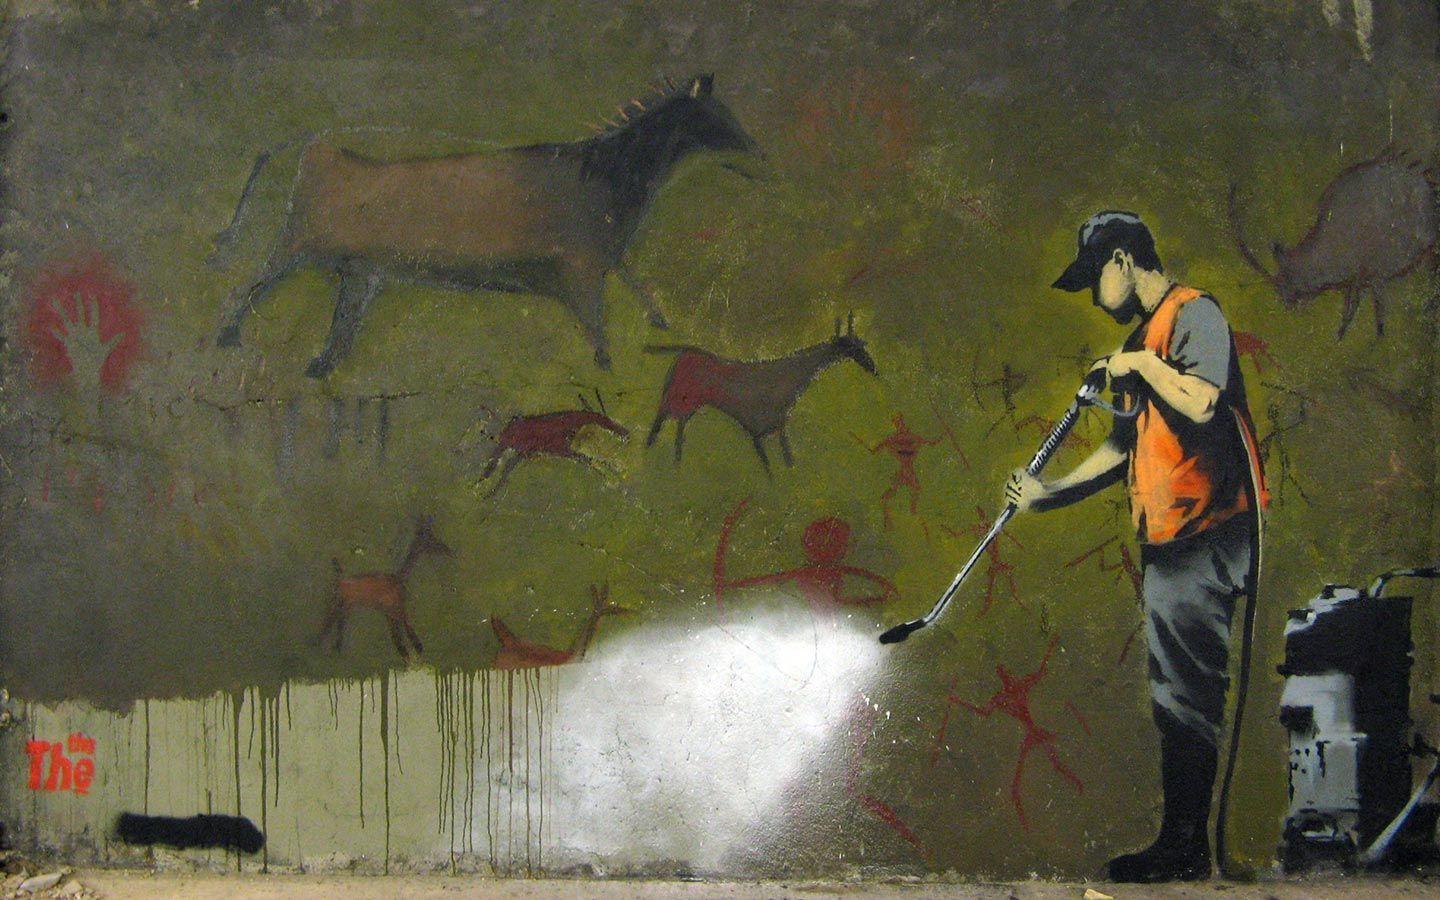 Caveman Graffiti Banksy Wallpaper